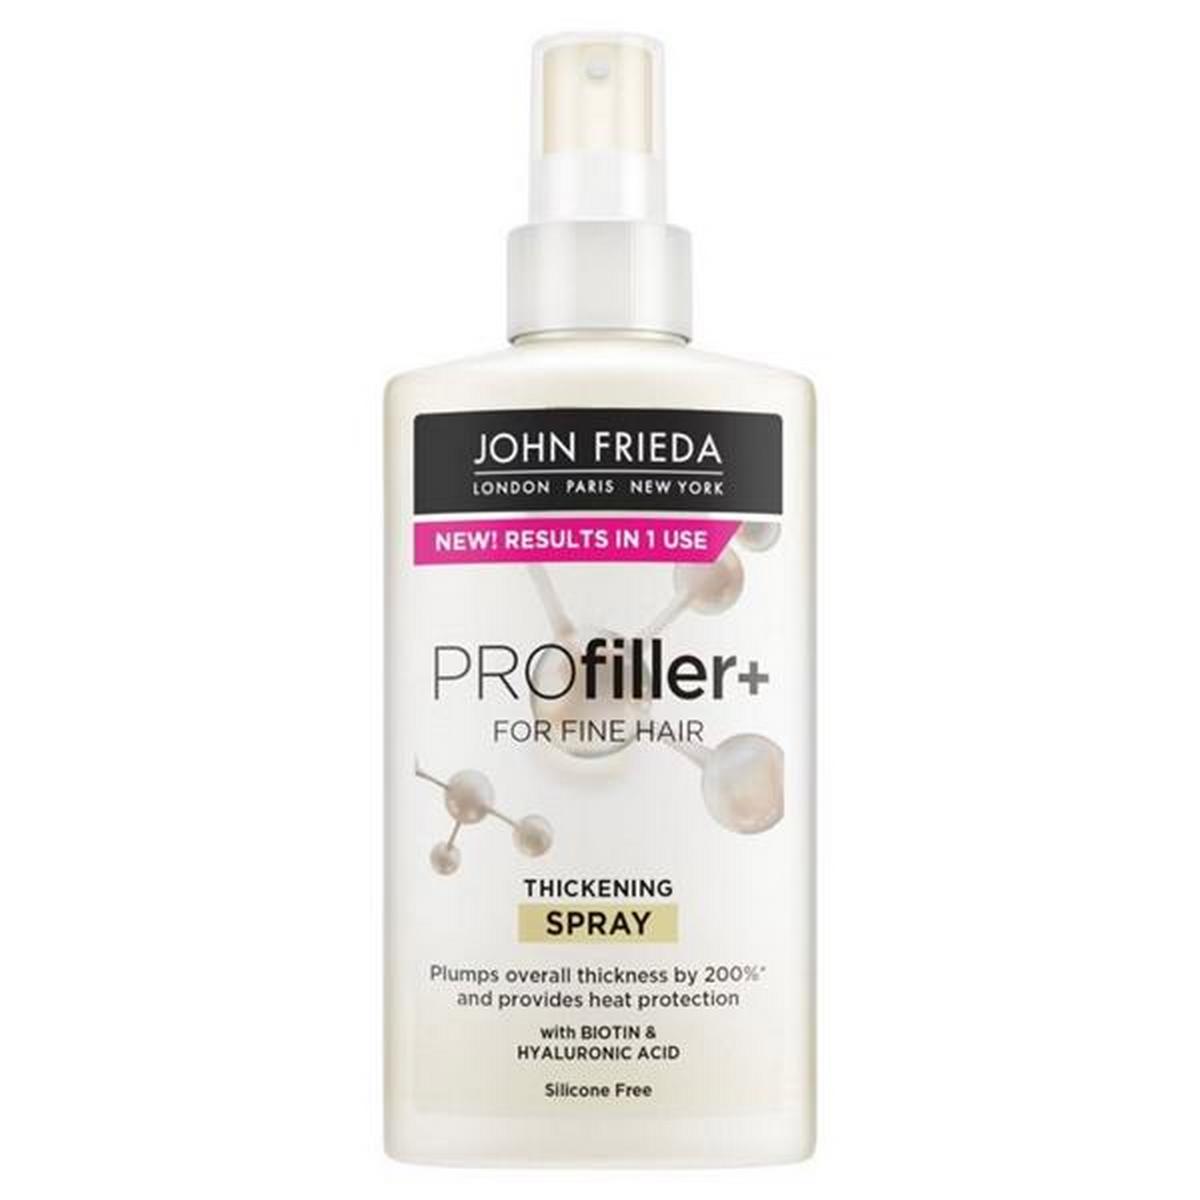 John Frieda Pro Filler Tickening Spray